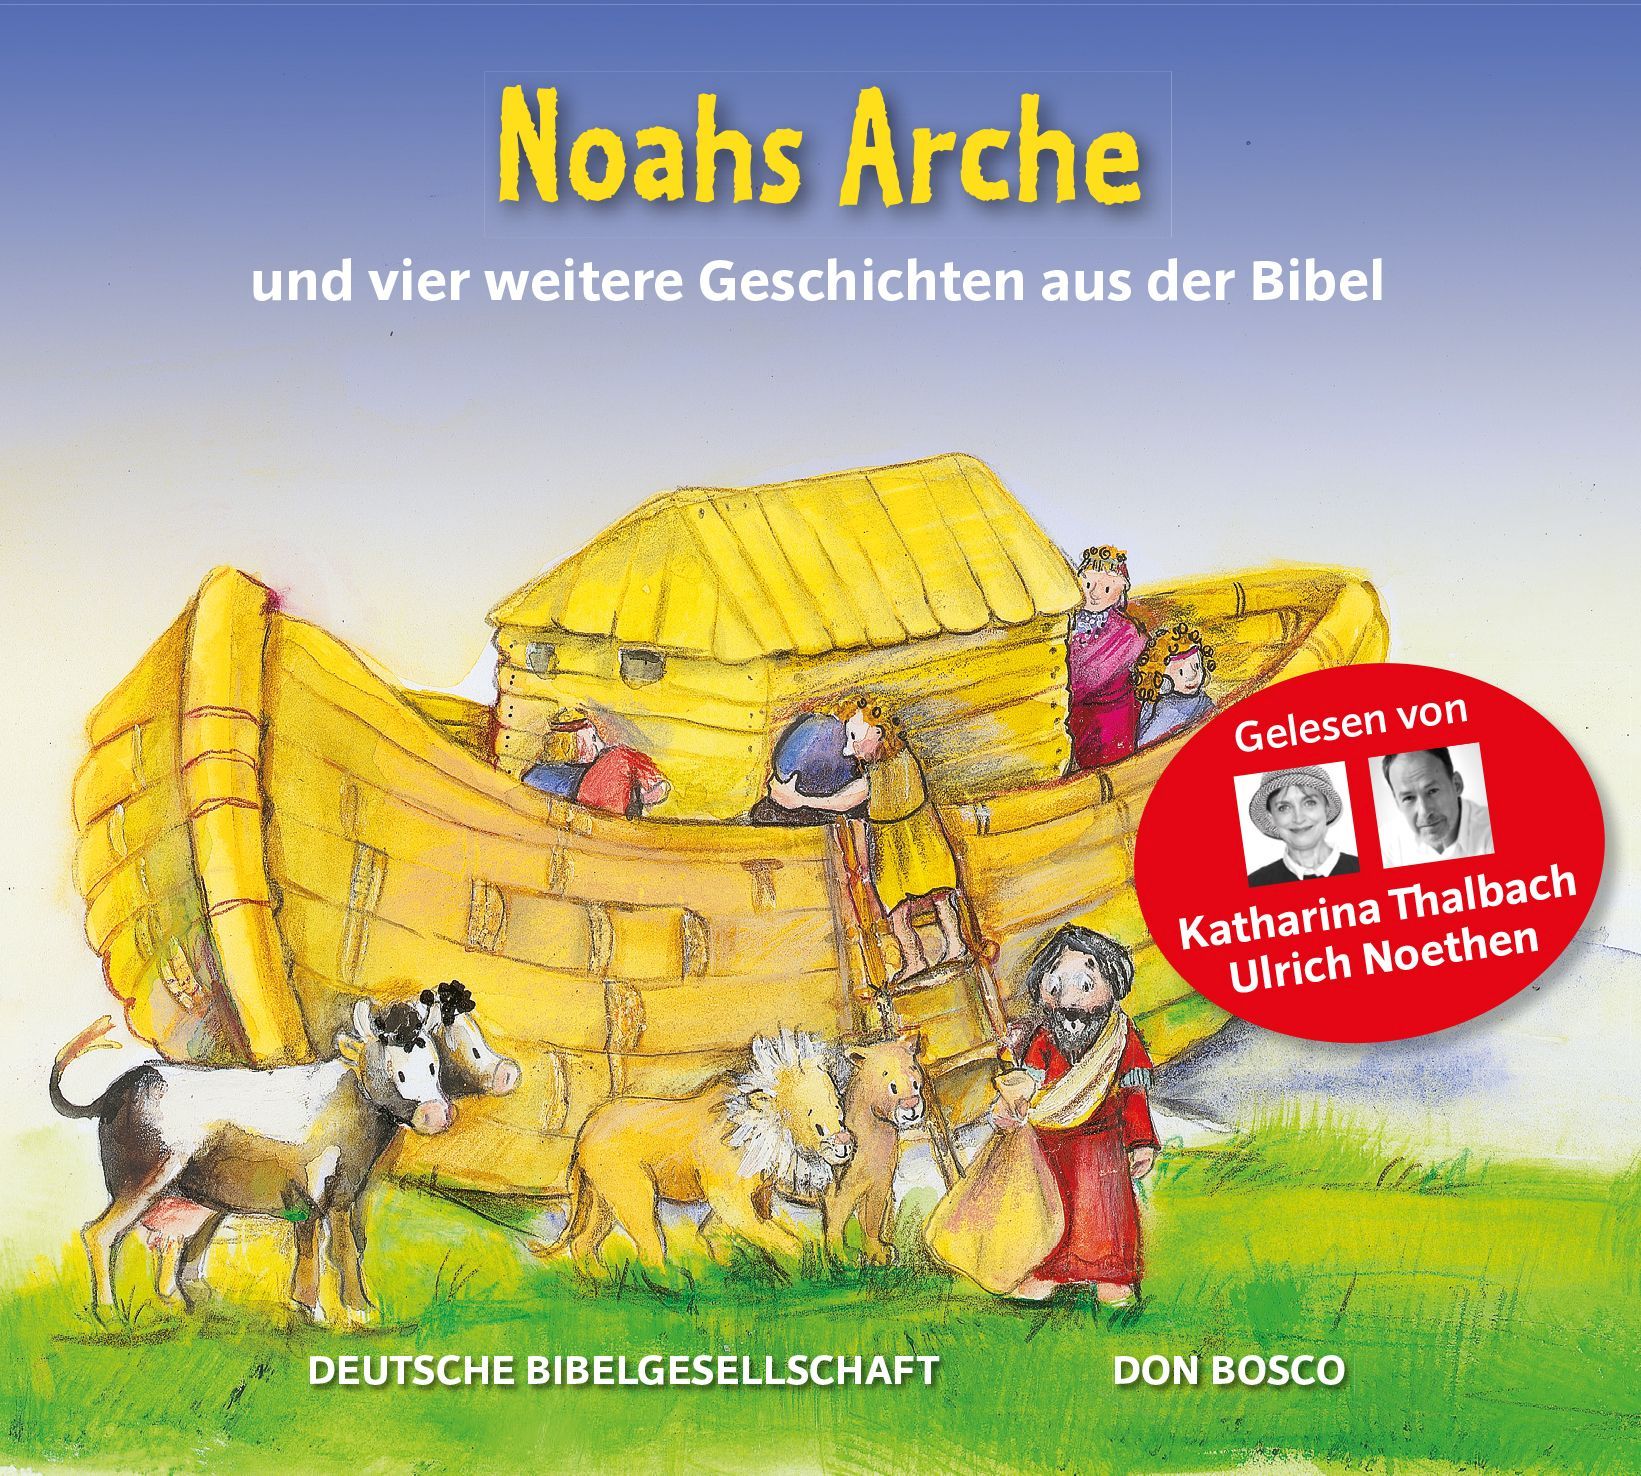 Noahs Arche - Hörbibel